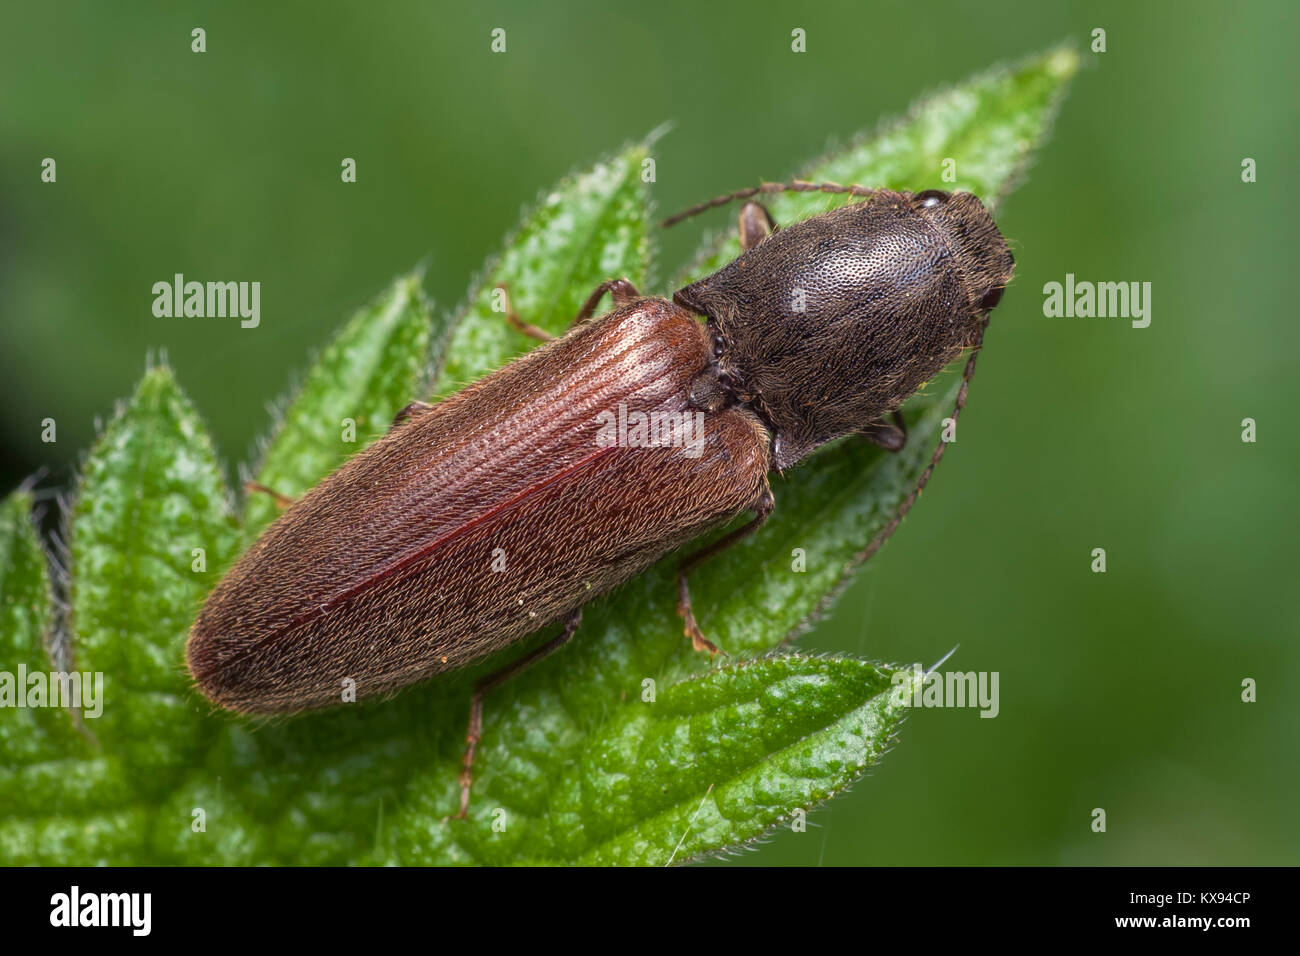 Vista dorsal de un clic de escarabajo en la familia Elateridae en reposo sobre una hoja de zarzas en los bosques. Cahir, Tipperary, Irlanda. Foto de stock